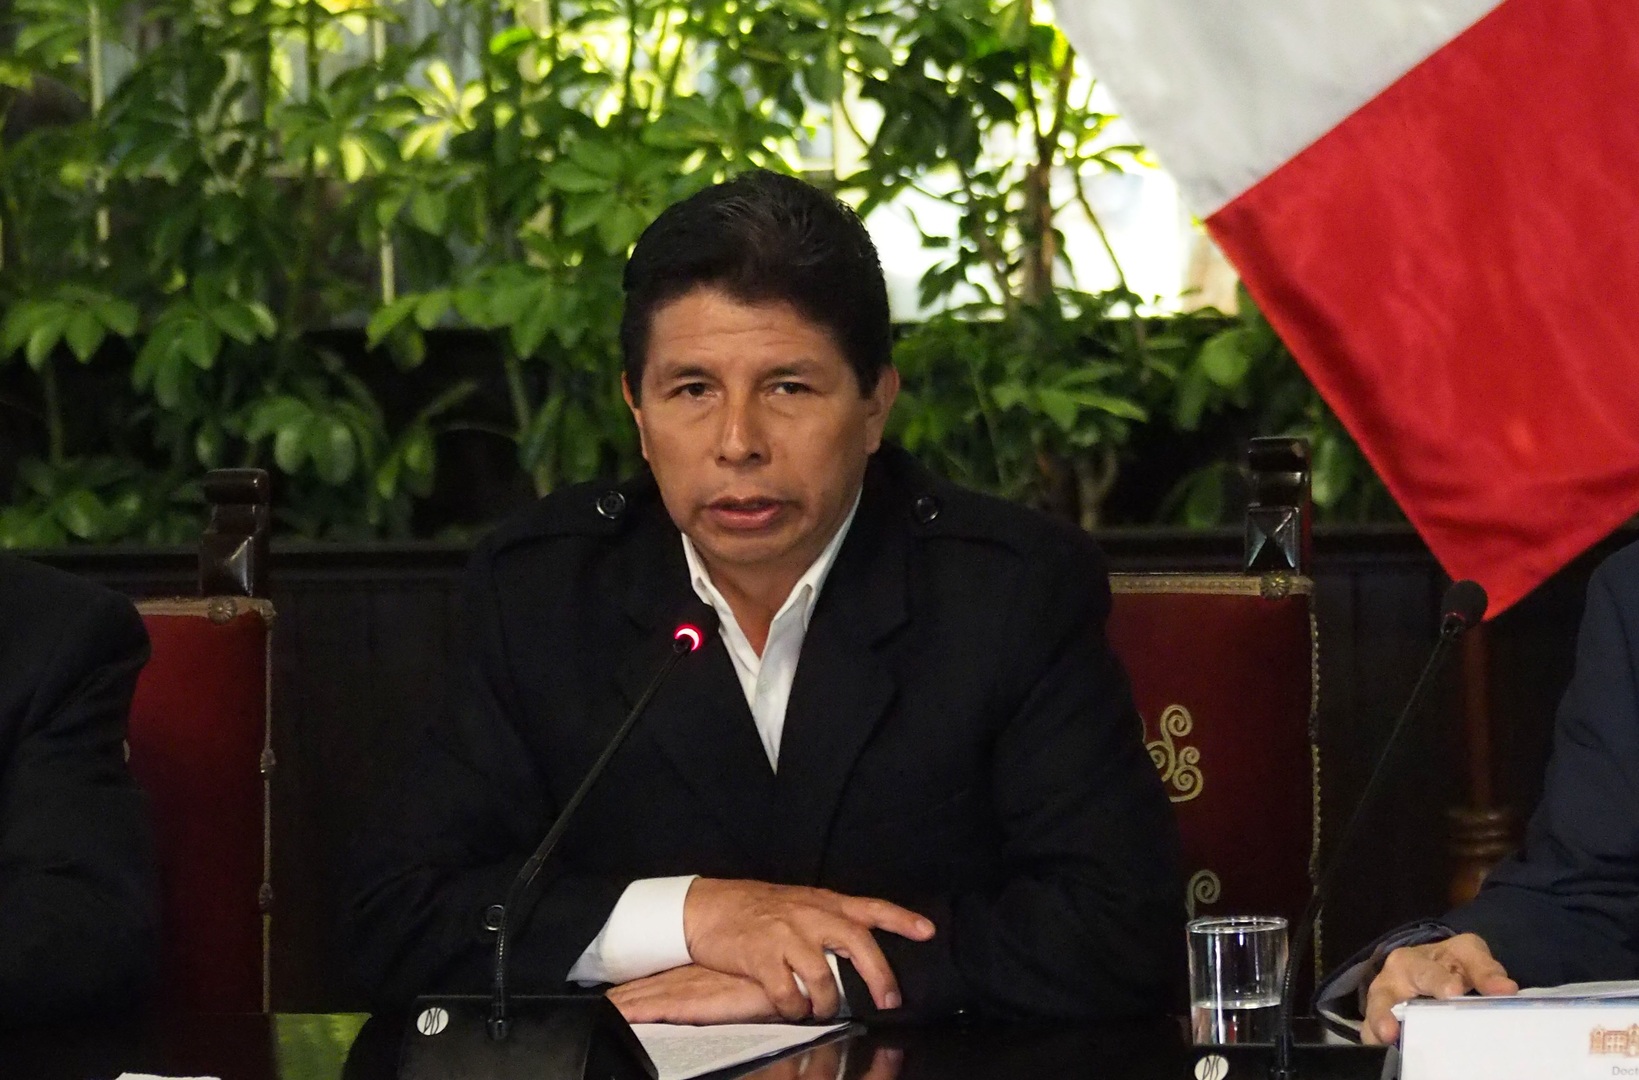 مادورو: رئيس بيرو المعزول ضحية لمؤامرة النخب اليمينية